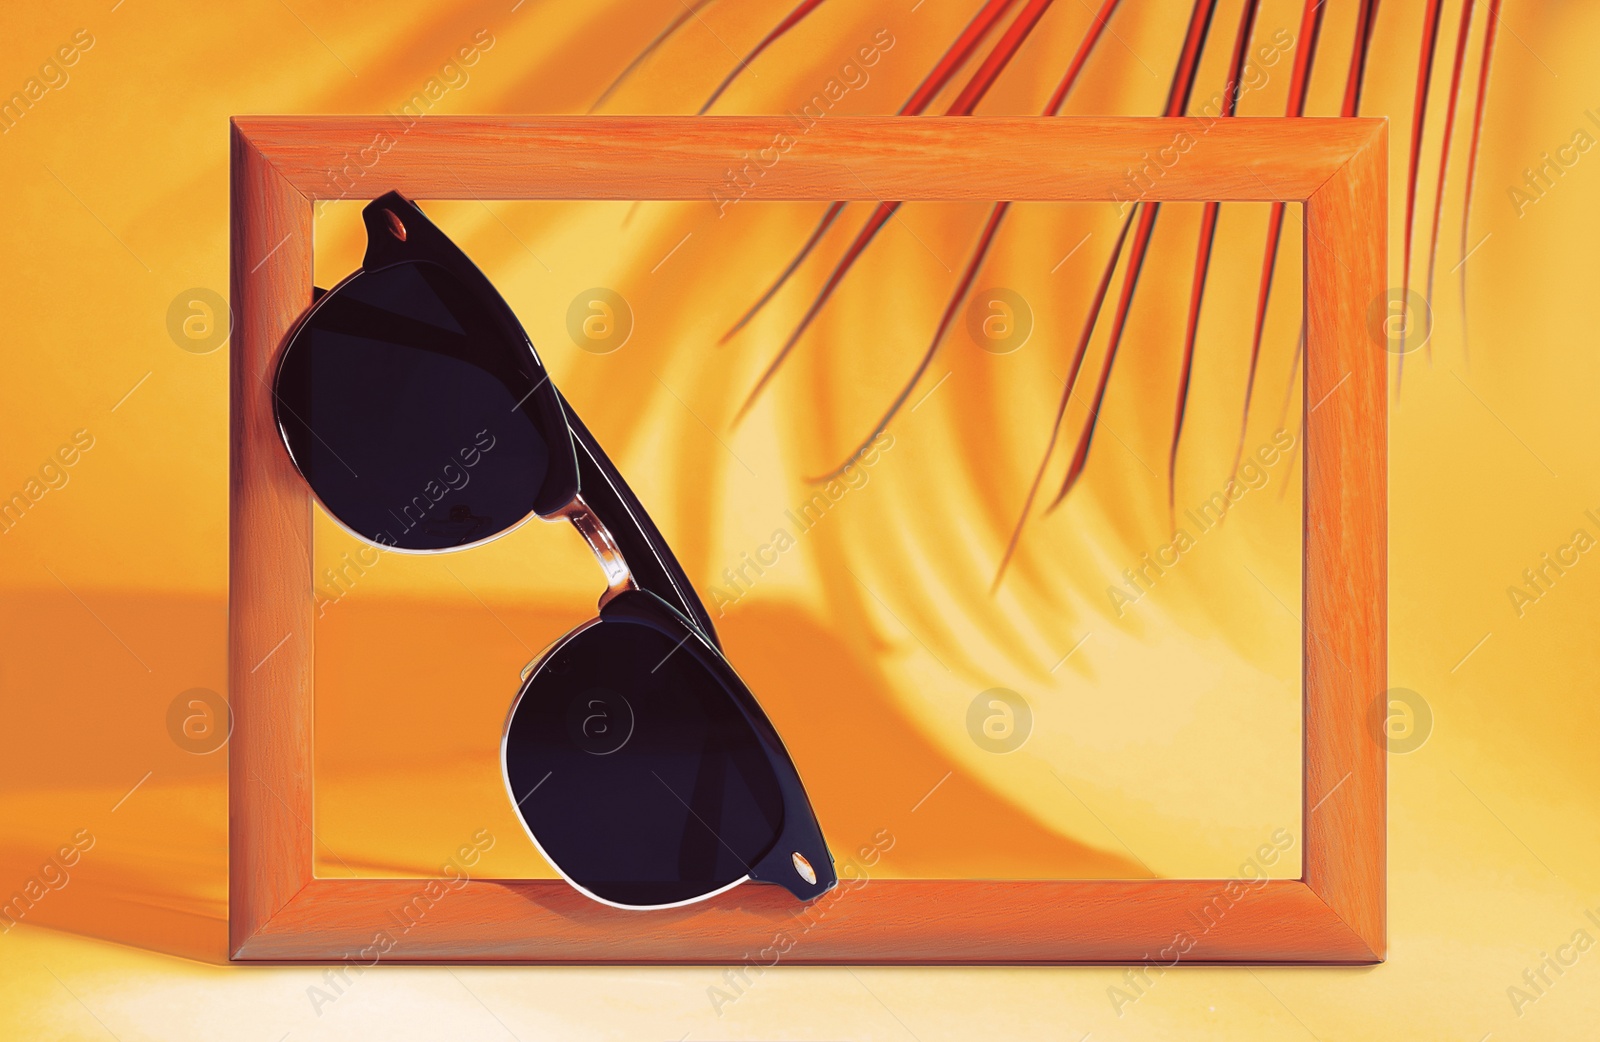 Image of Stylish sunglasses near photo frame on orange background